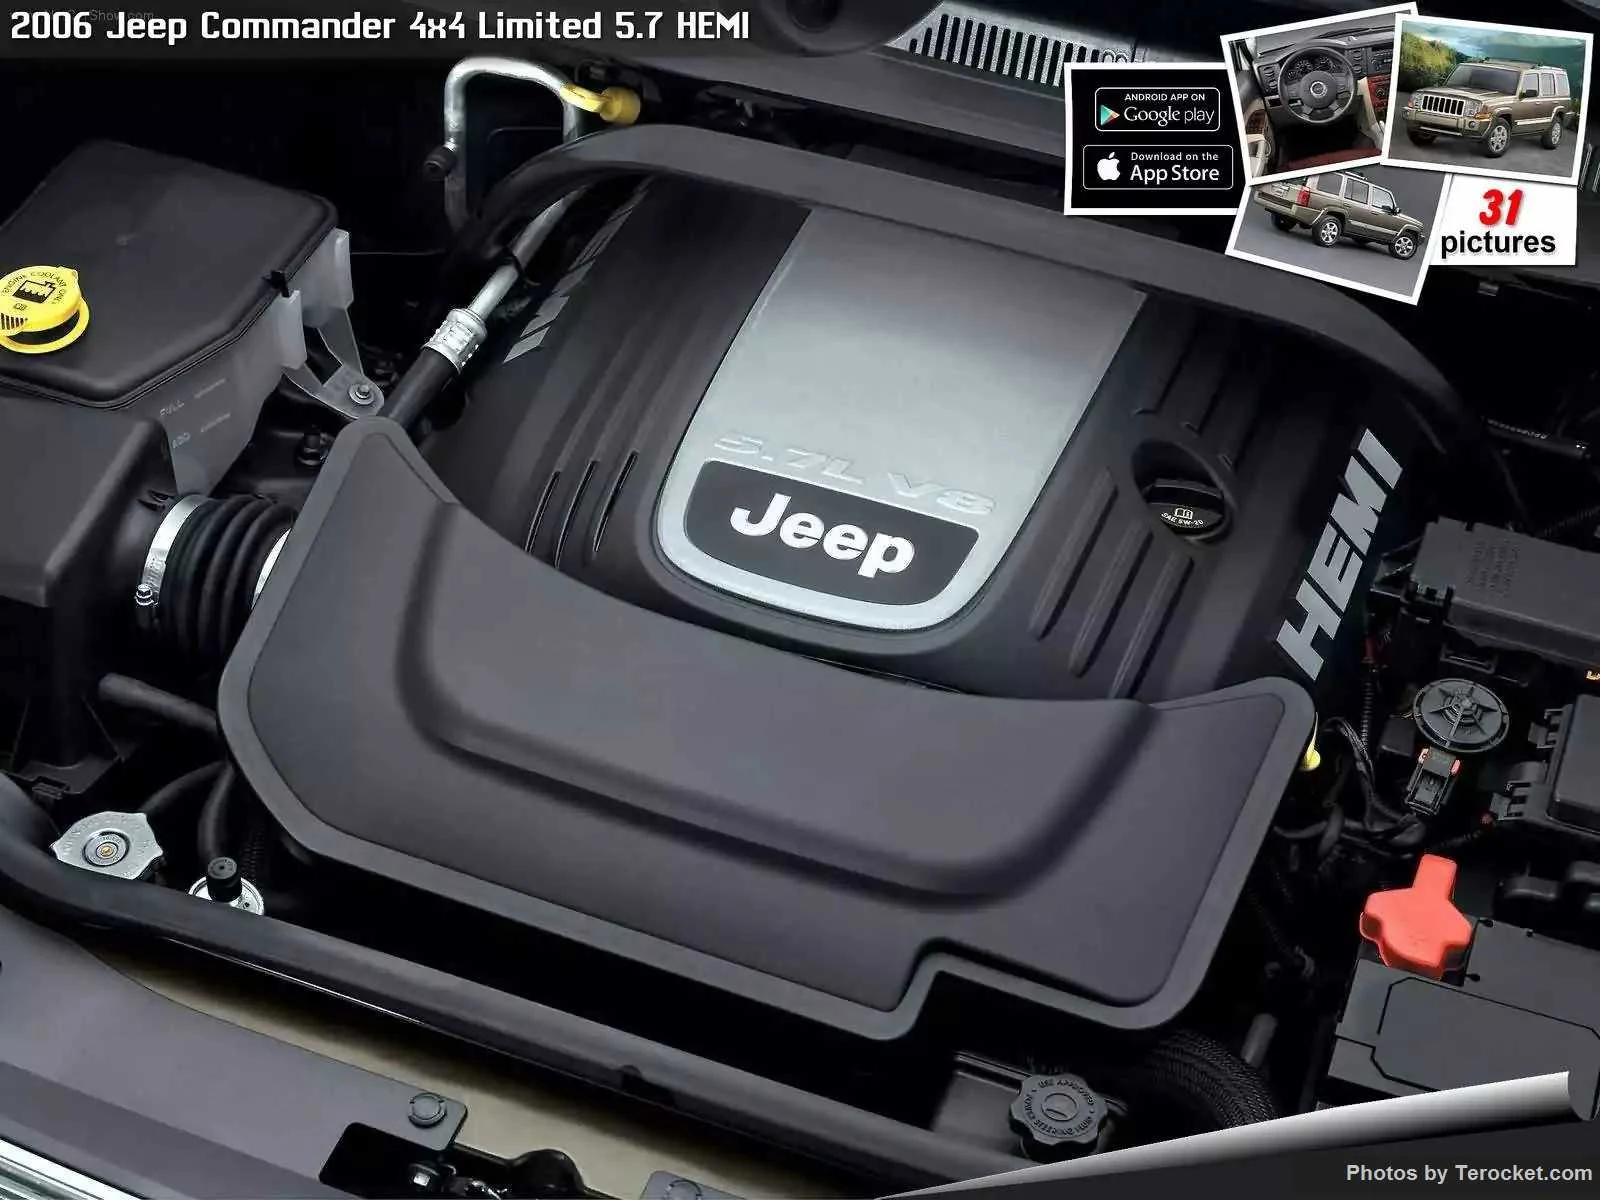 Hình ảnh xe ô tô Jeep Commander 4x4 Limited 5.7 HEMI 2006 & nội ngoại thất